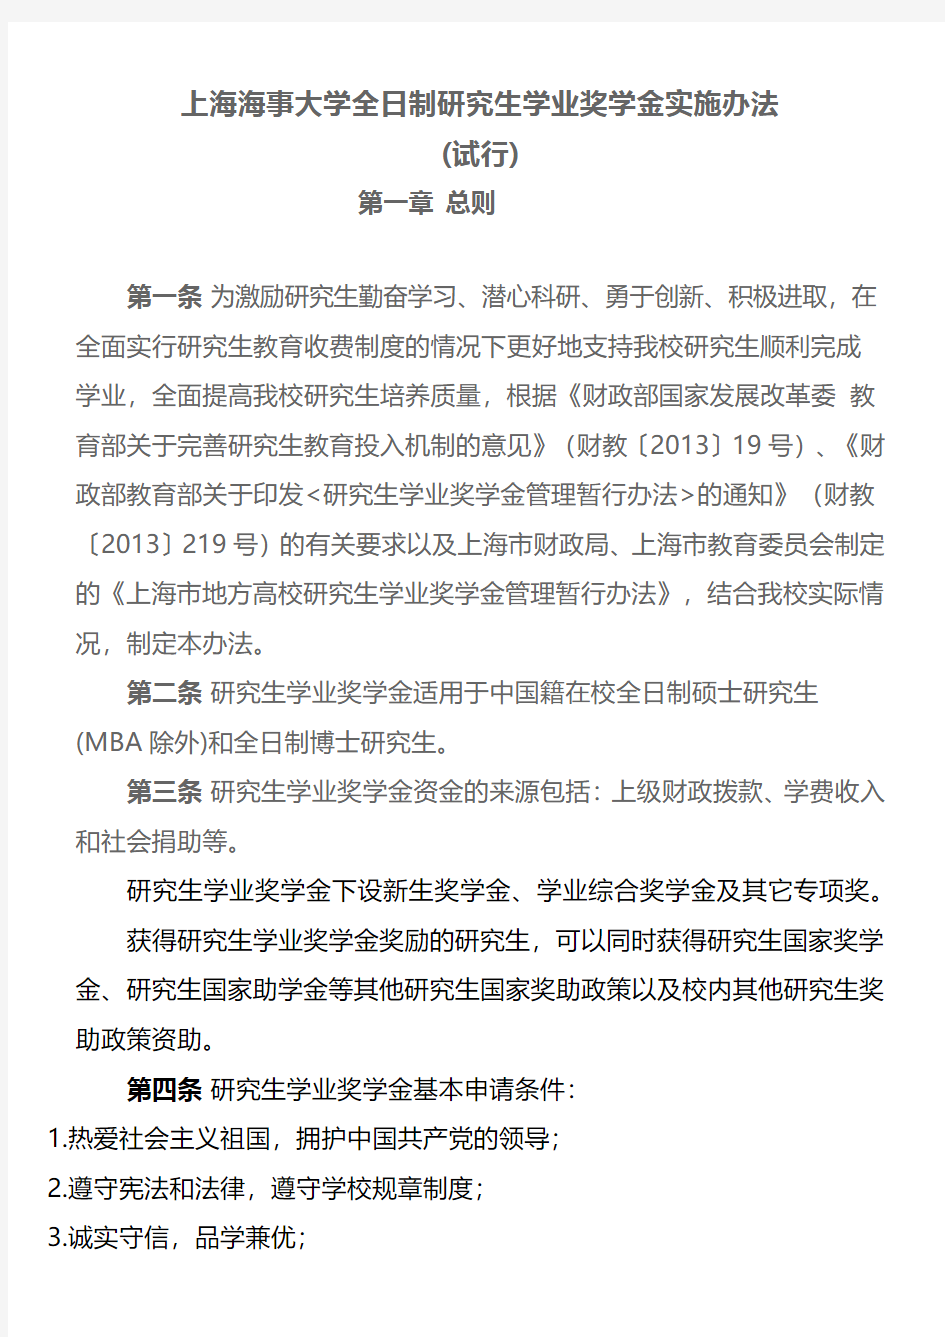 上海海事大学全日制研究生学业奖学金实施办法